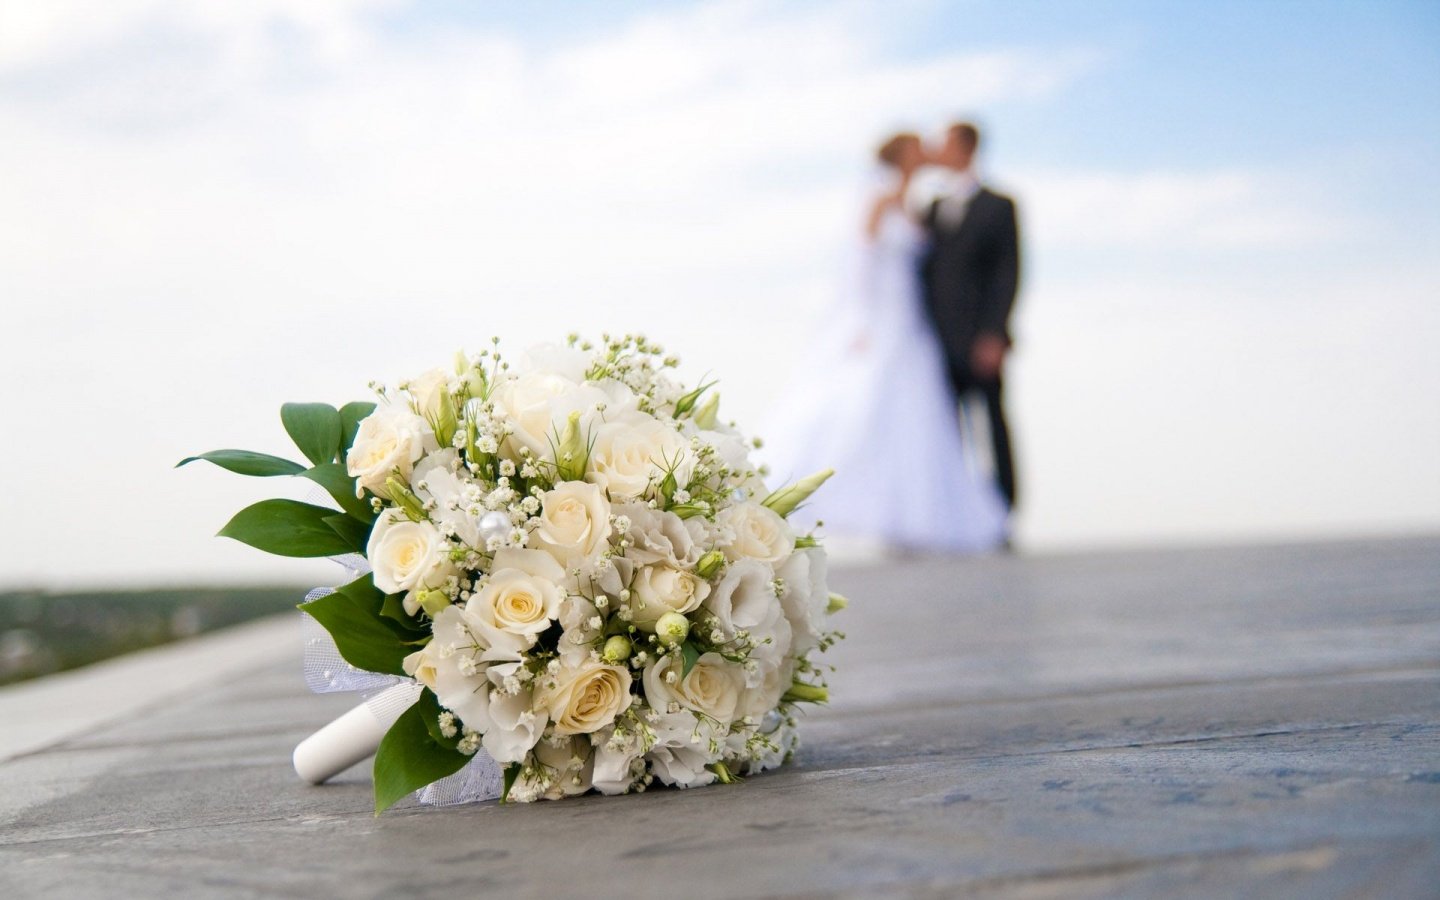 Εύβοια: Γαμήλιο κορωνο-γλέντι σε βίλα με πάνω από 500 άτομα – Γλεντούσε και Διοικητής Αστυνομικού Τμήματος